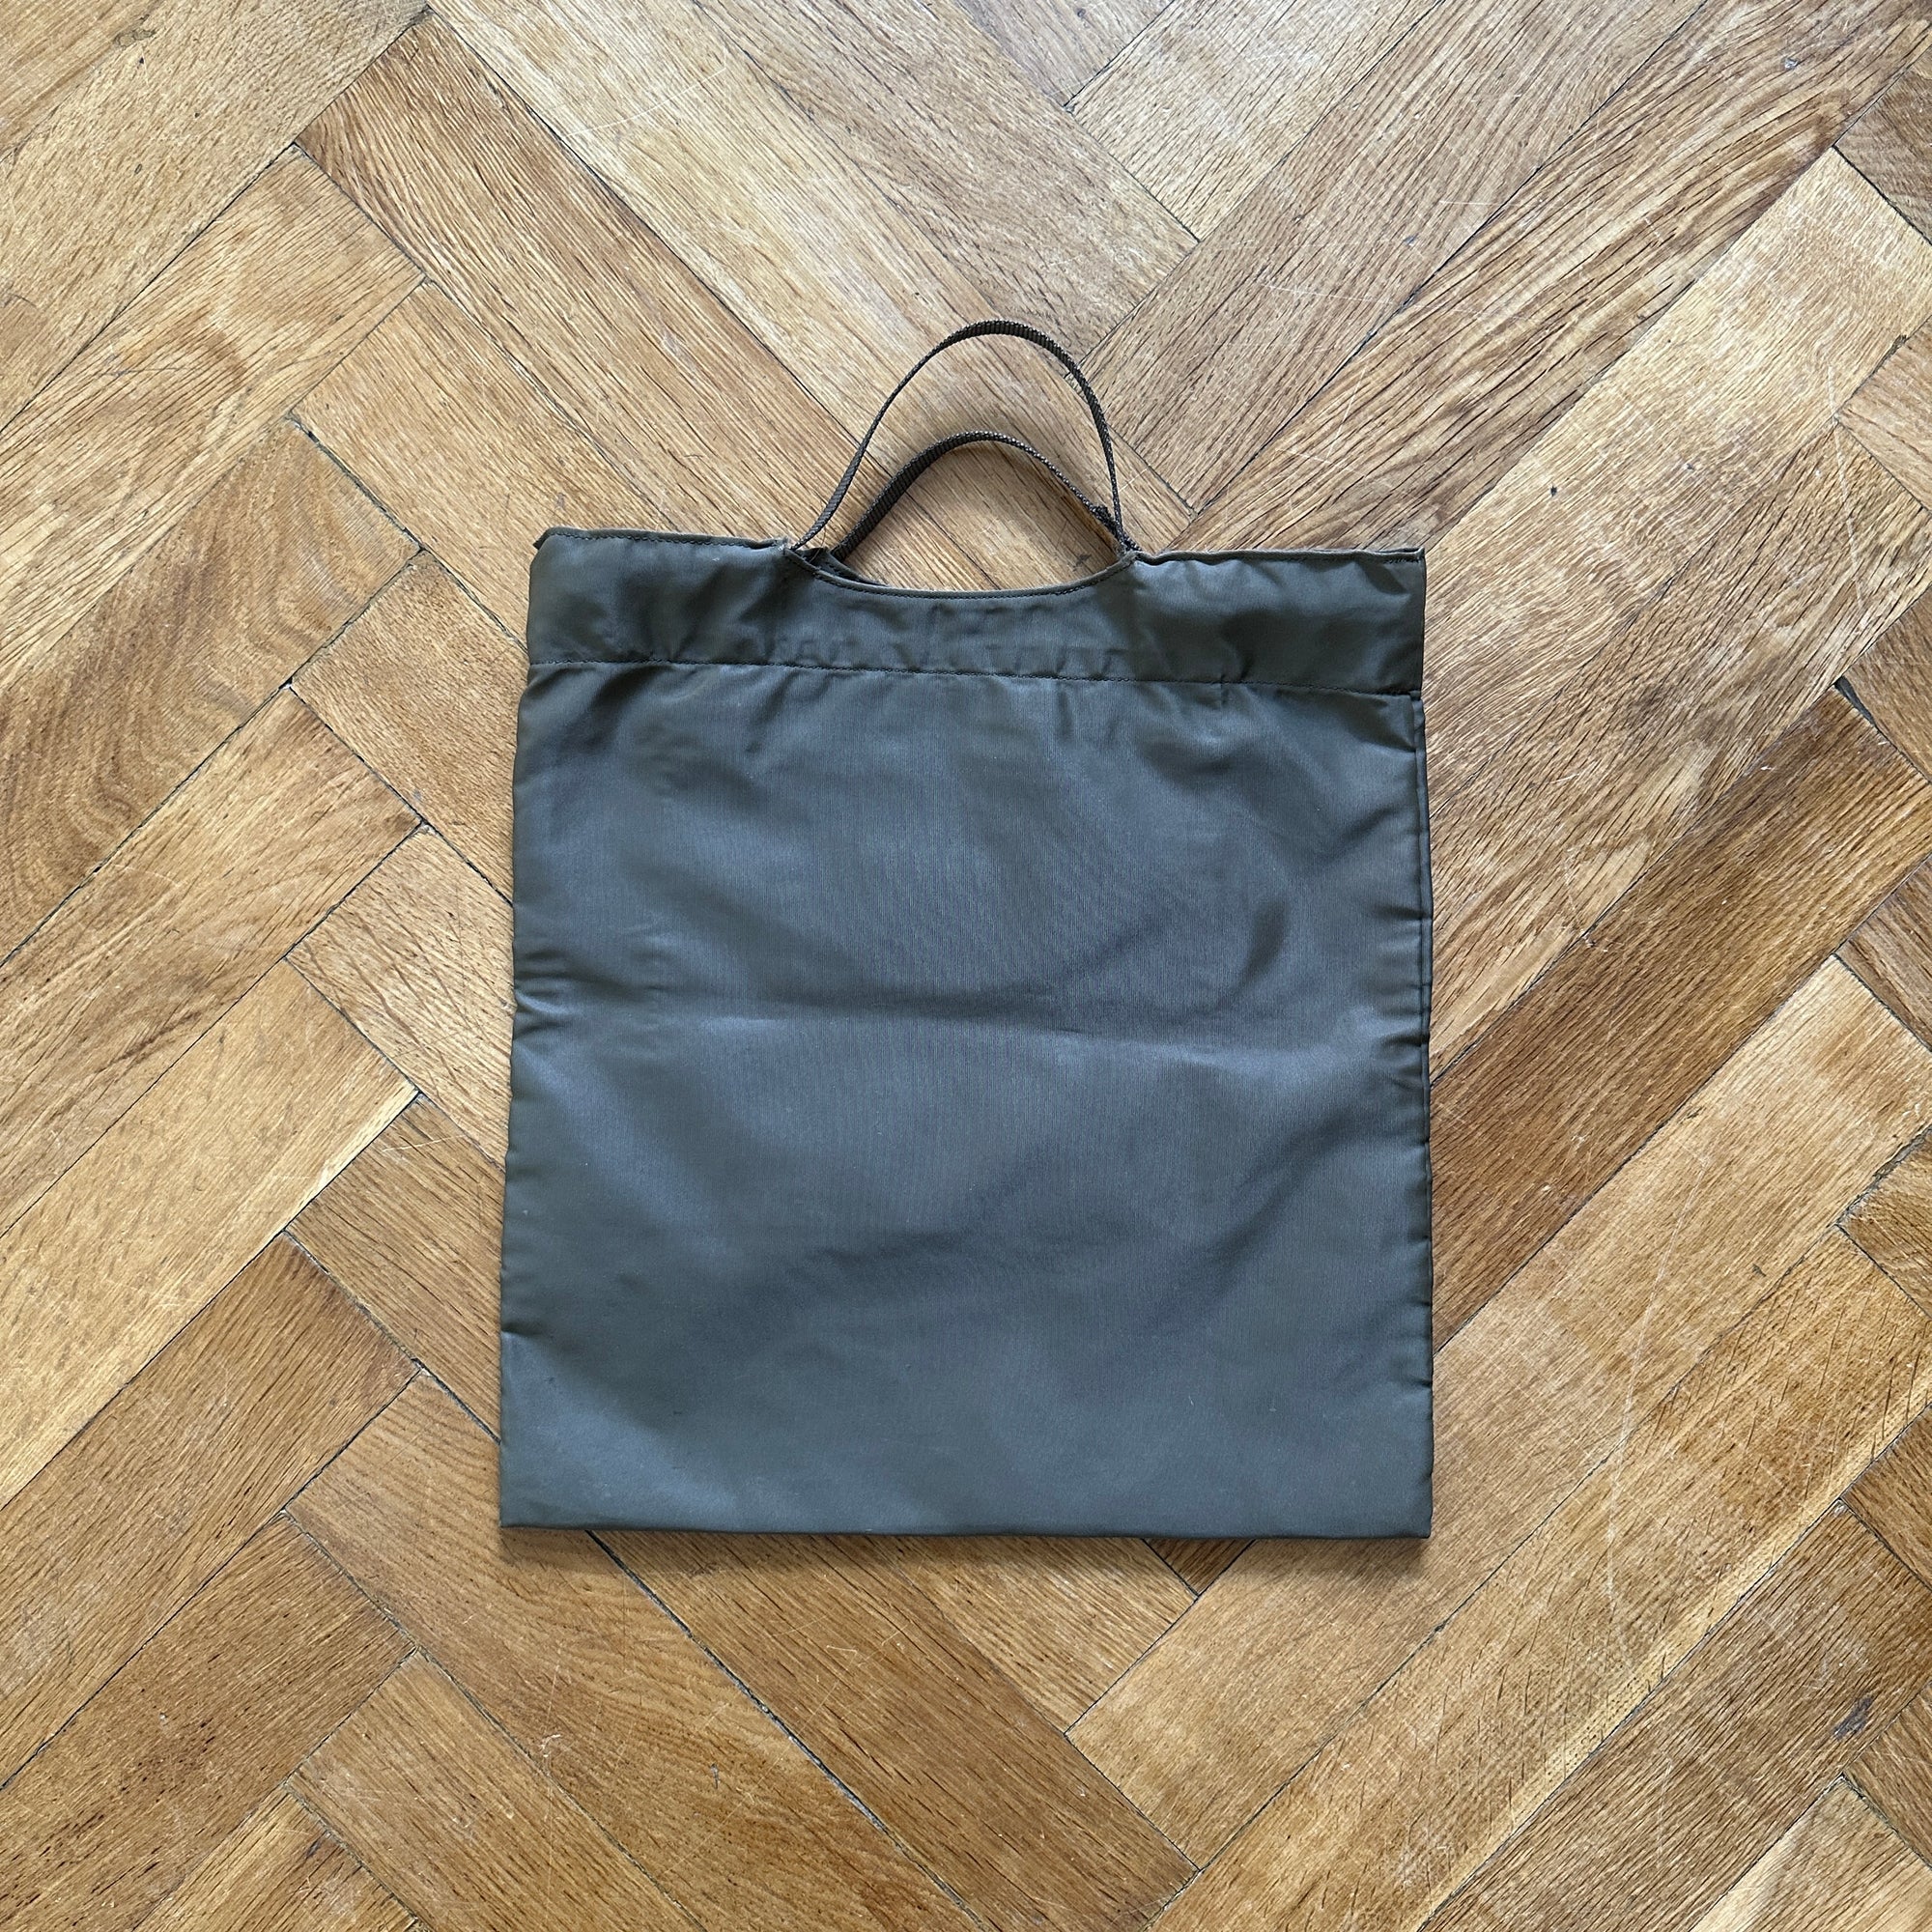 Helmut Lang 2000s Olive Logo Tote Hand Bag